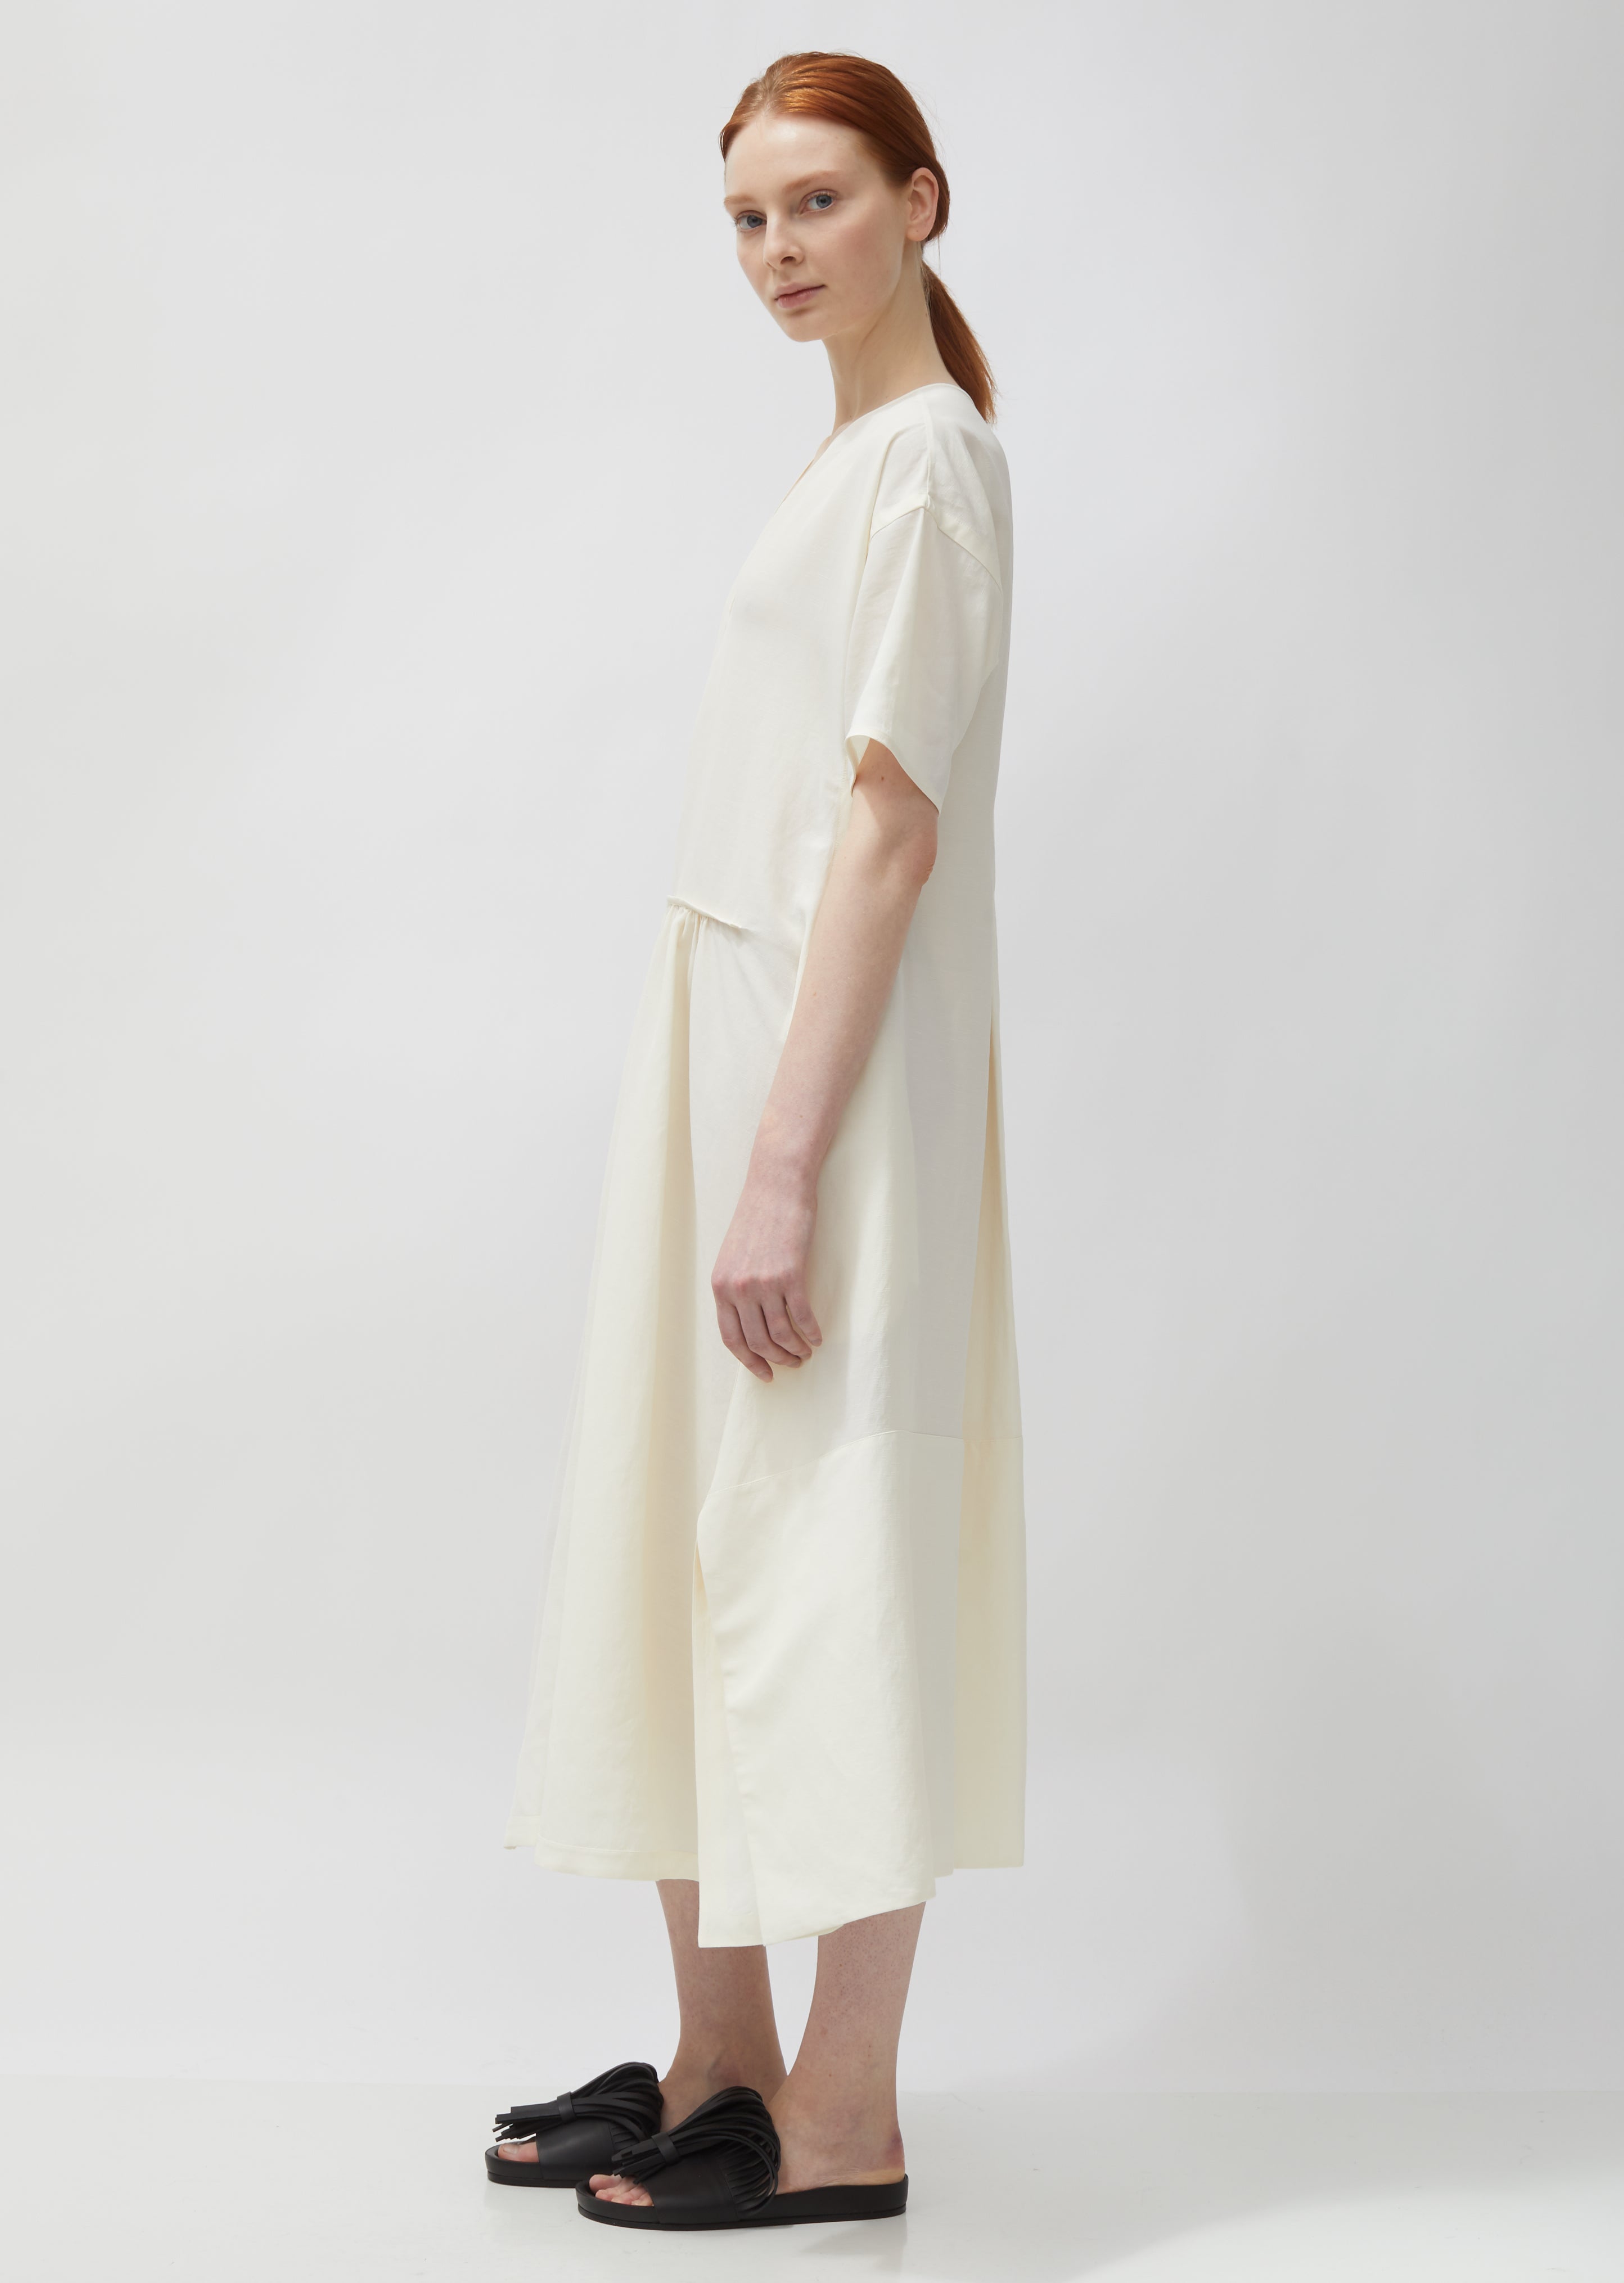 Marabel Textured Fluid Viscose and Linen Dress – La Garçonne